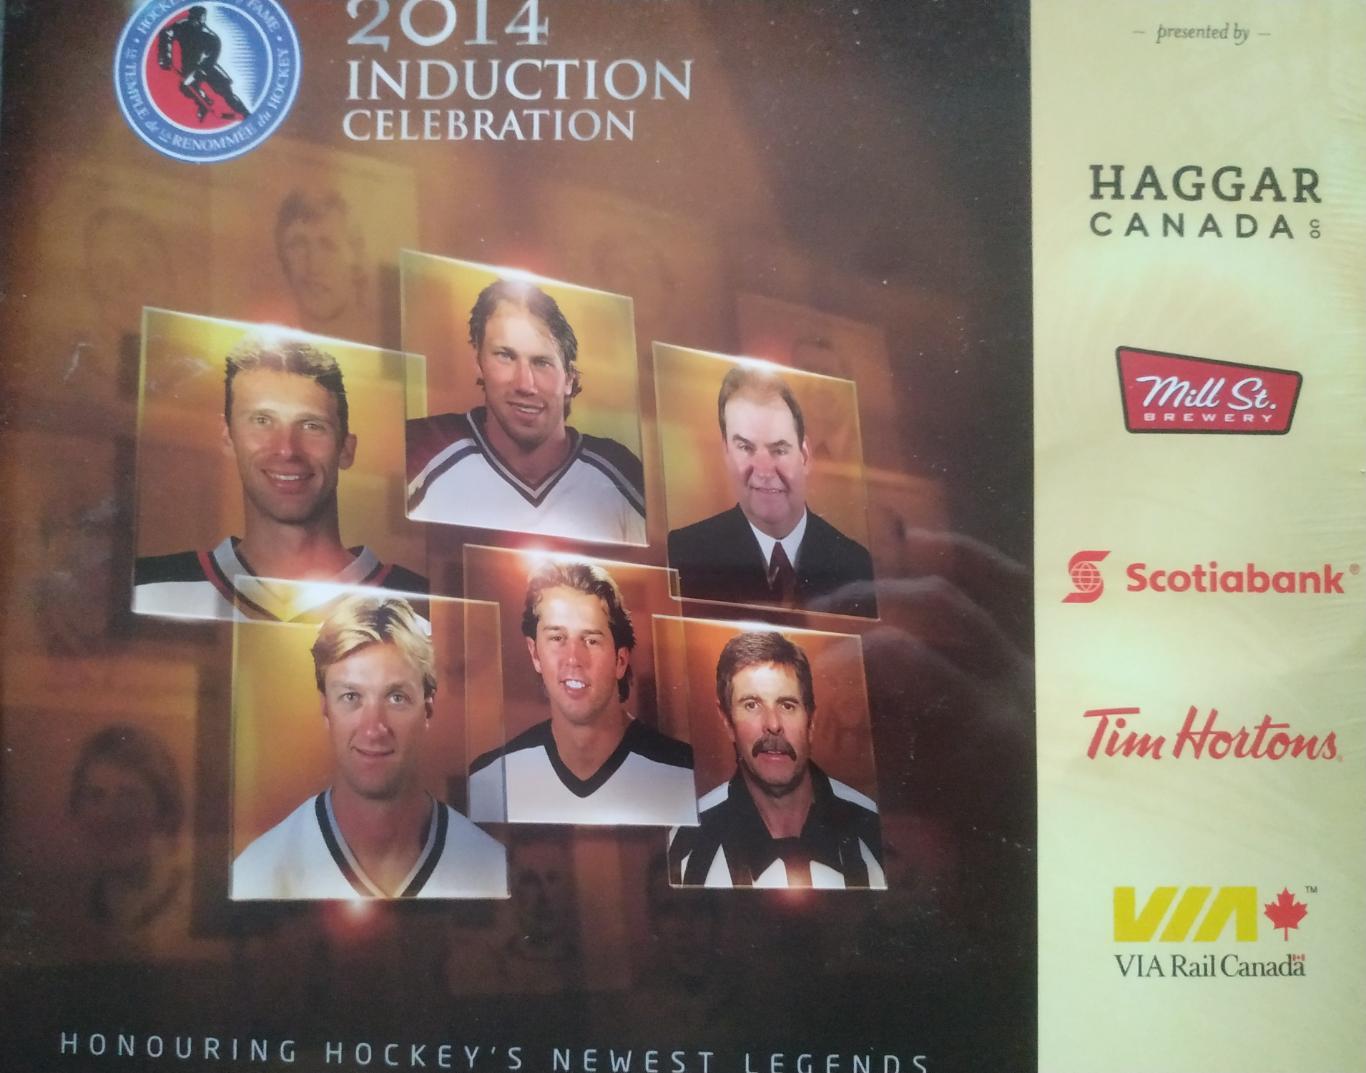 ХОККЕЙ КАЛЕНДАРЬ ЗАЛ СЛАВЫ НХЛ 2014 NHL HOCKEY HALL OF FAME OFFICIAL CALENDAR